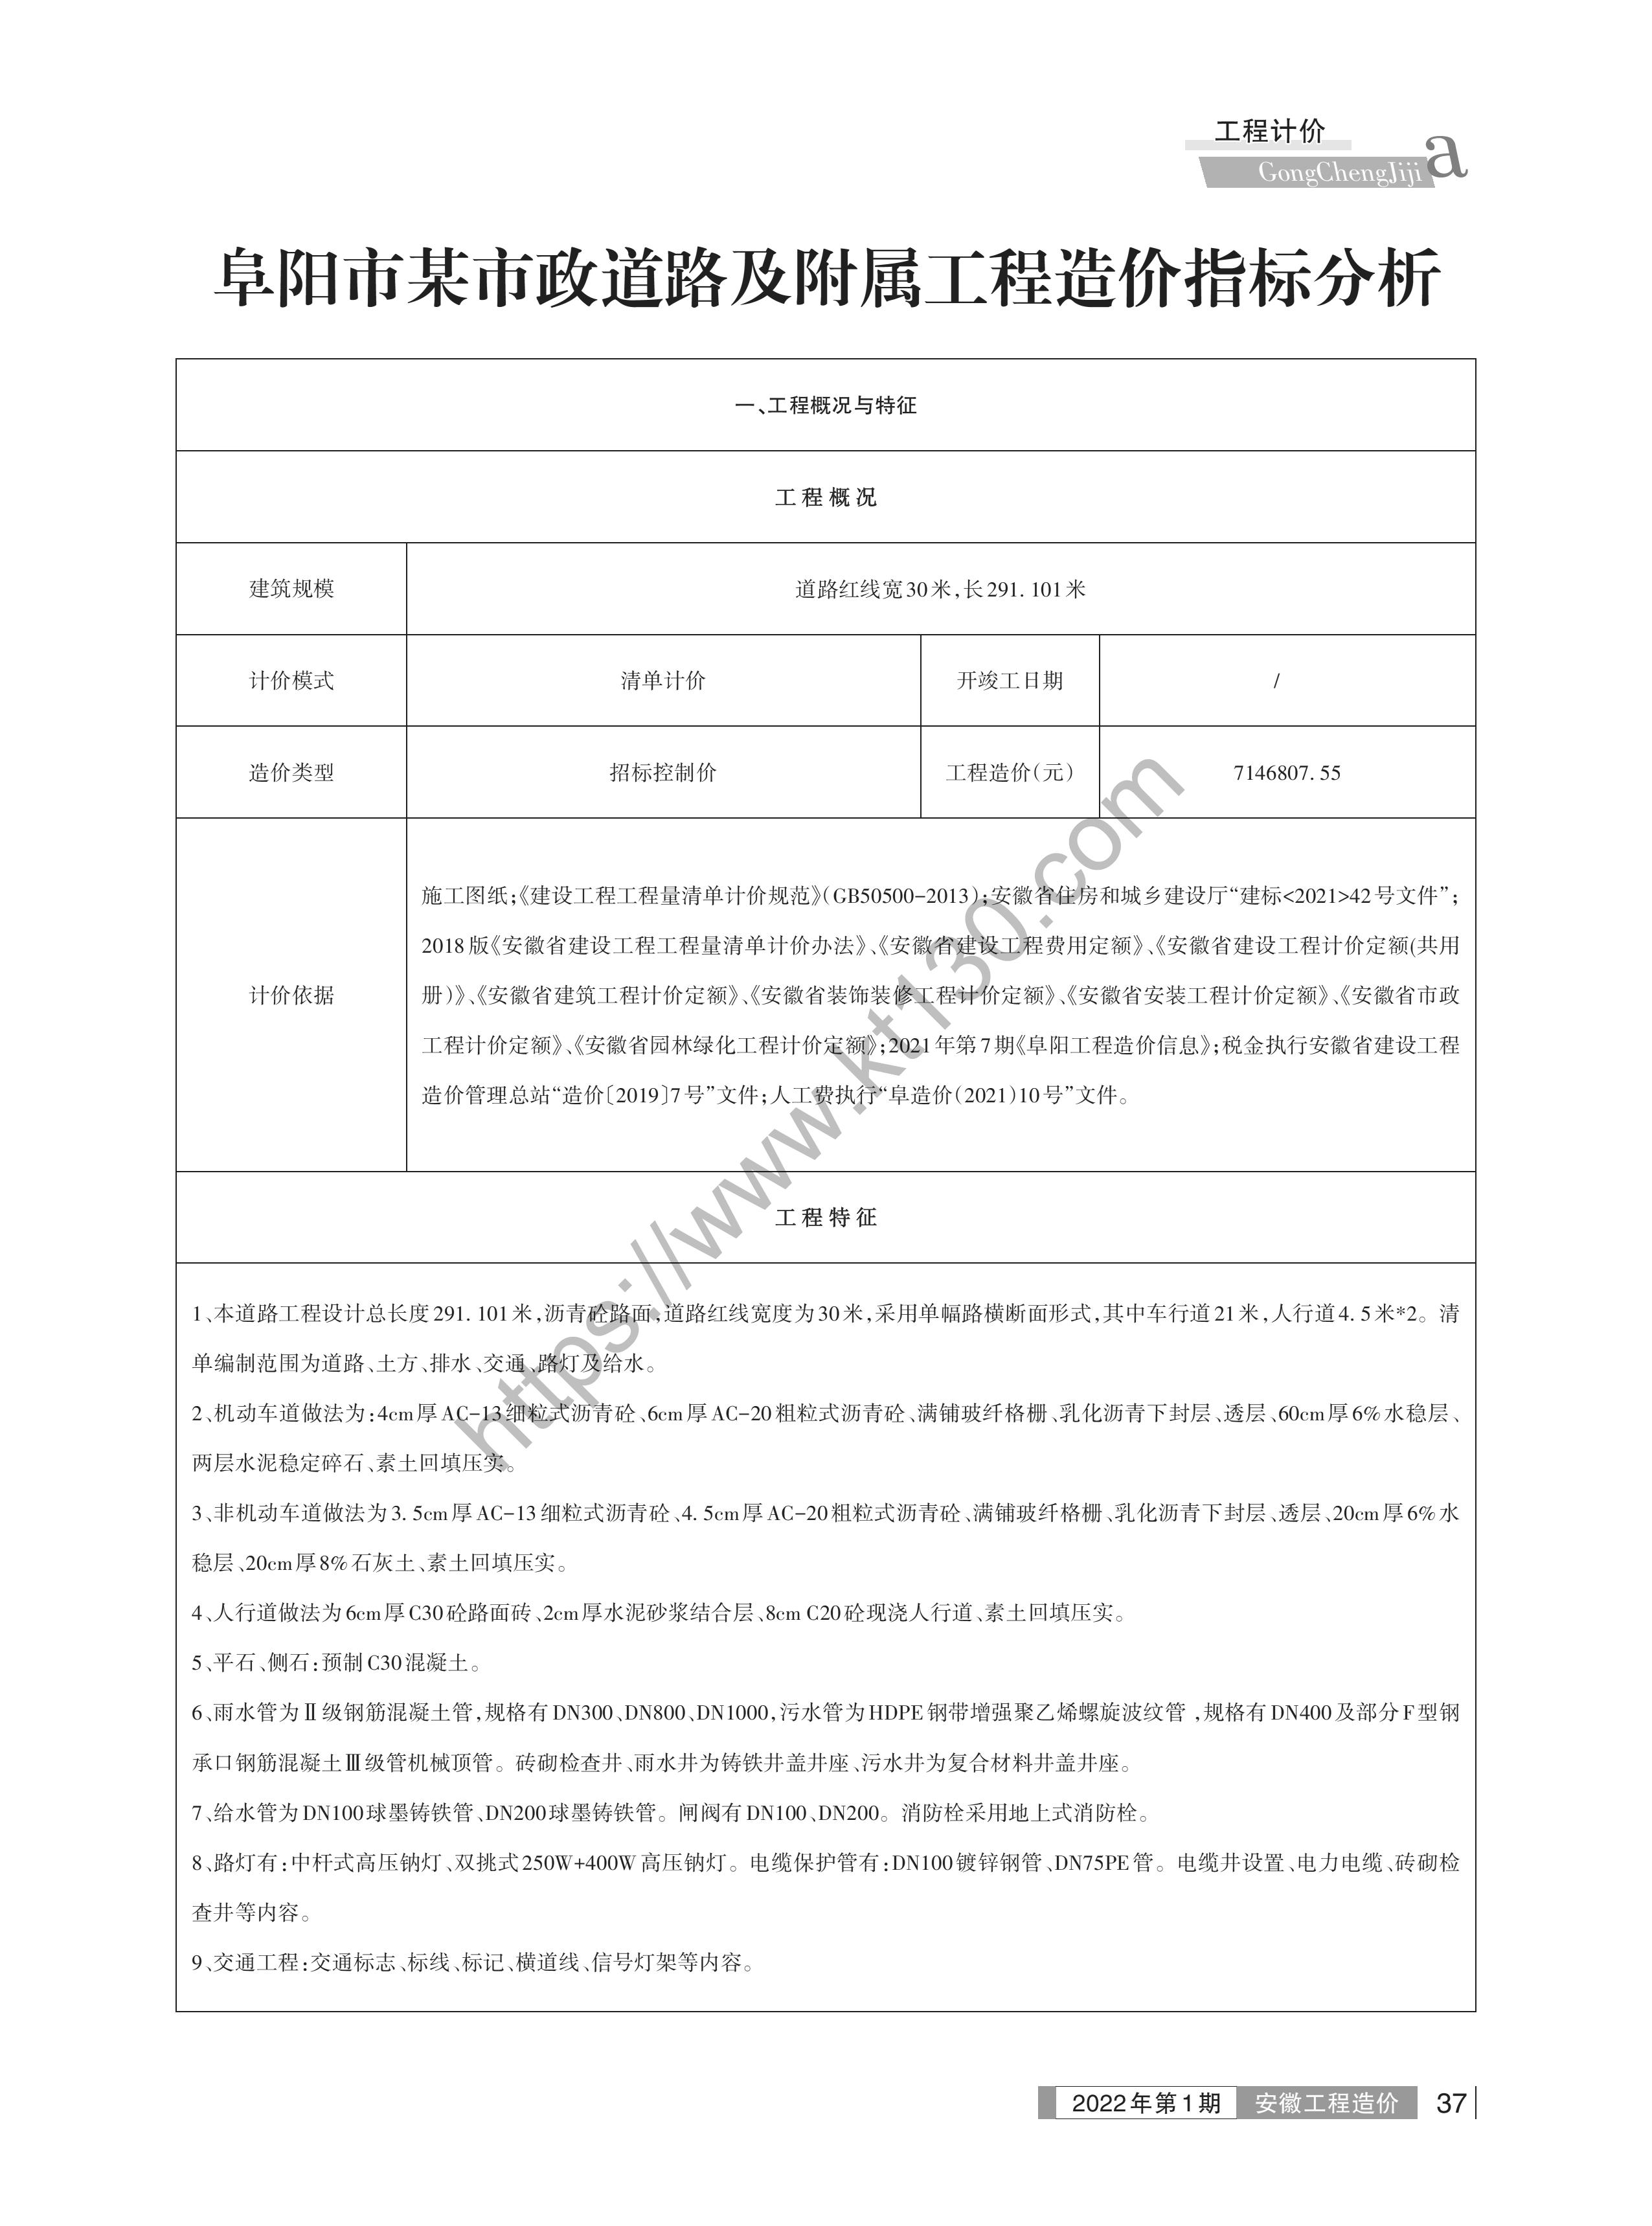 安徽省2022年1-2月建筑材料价_造价分析_33411